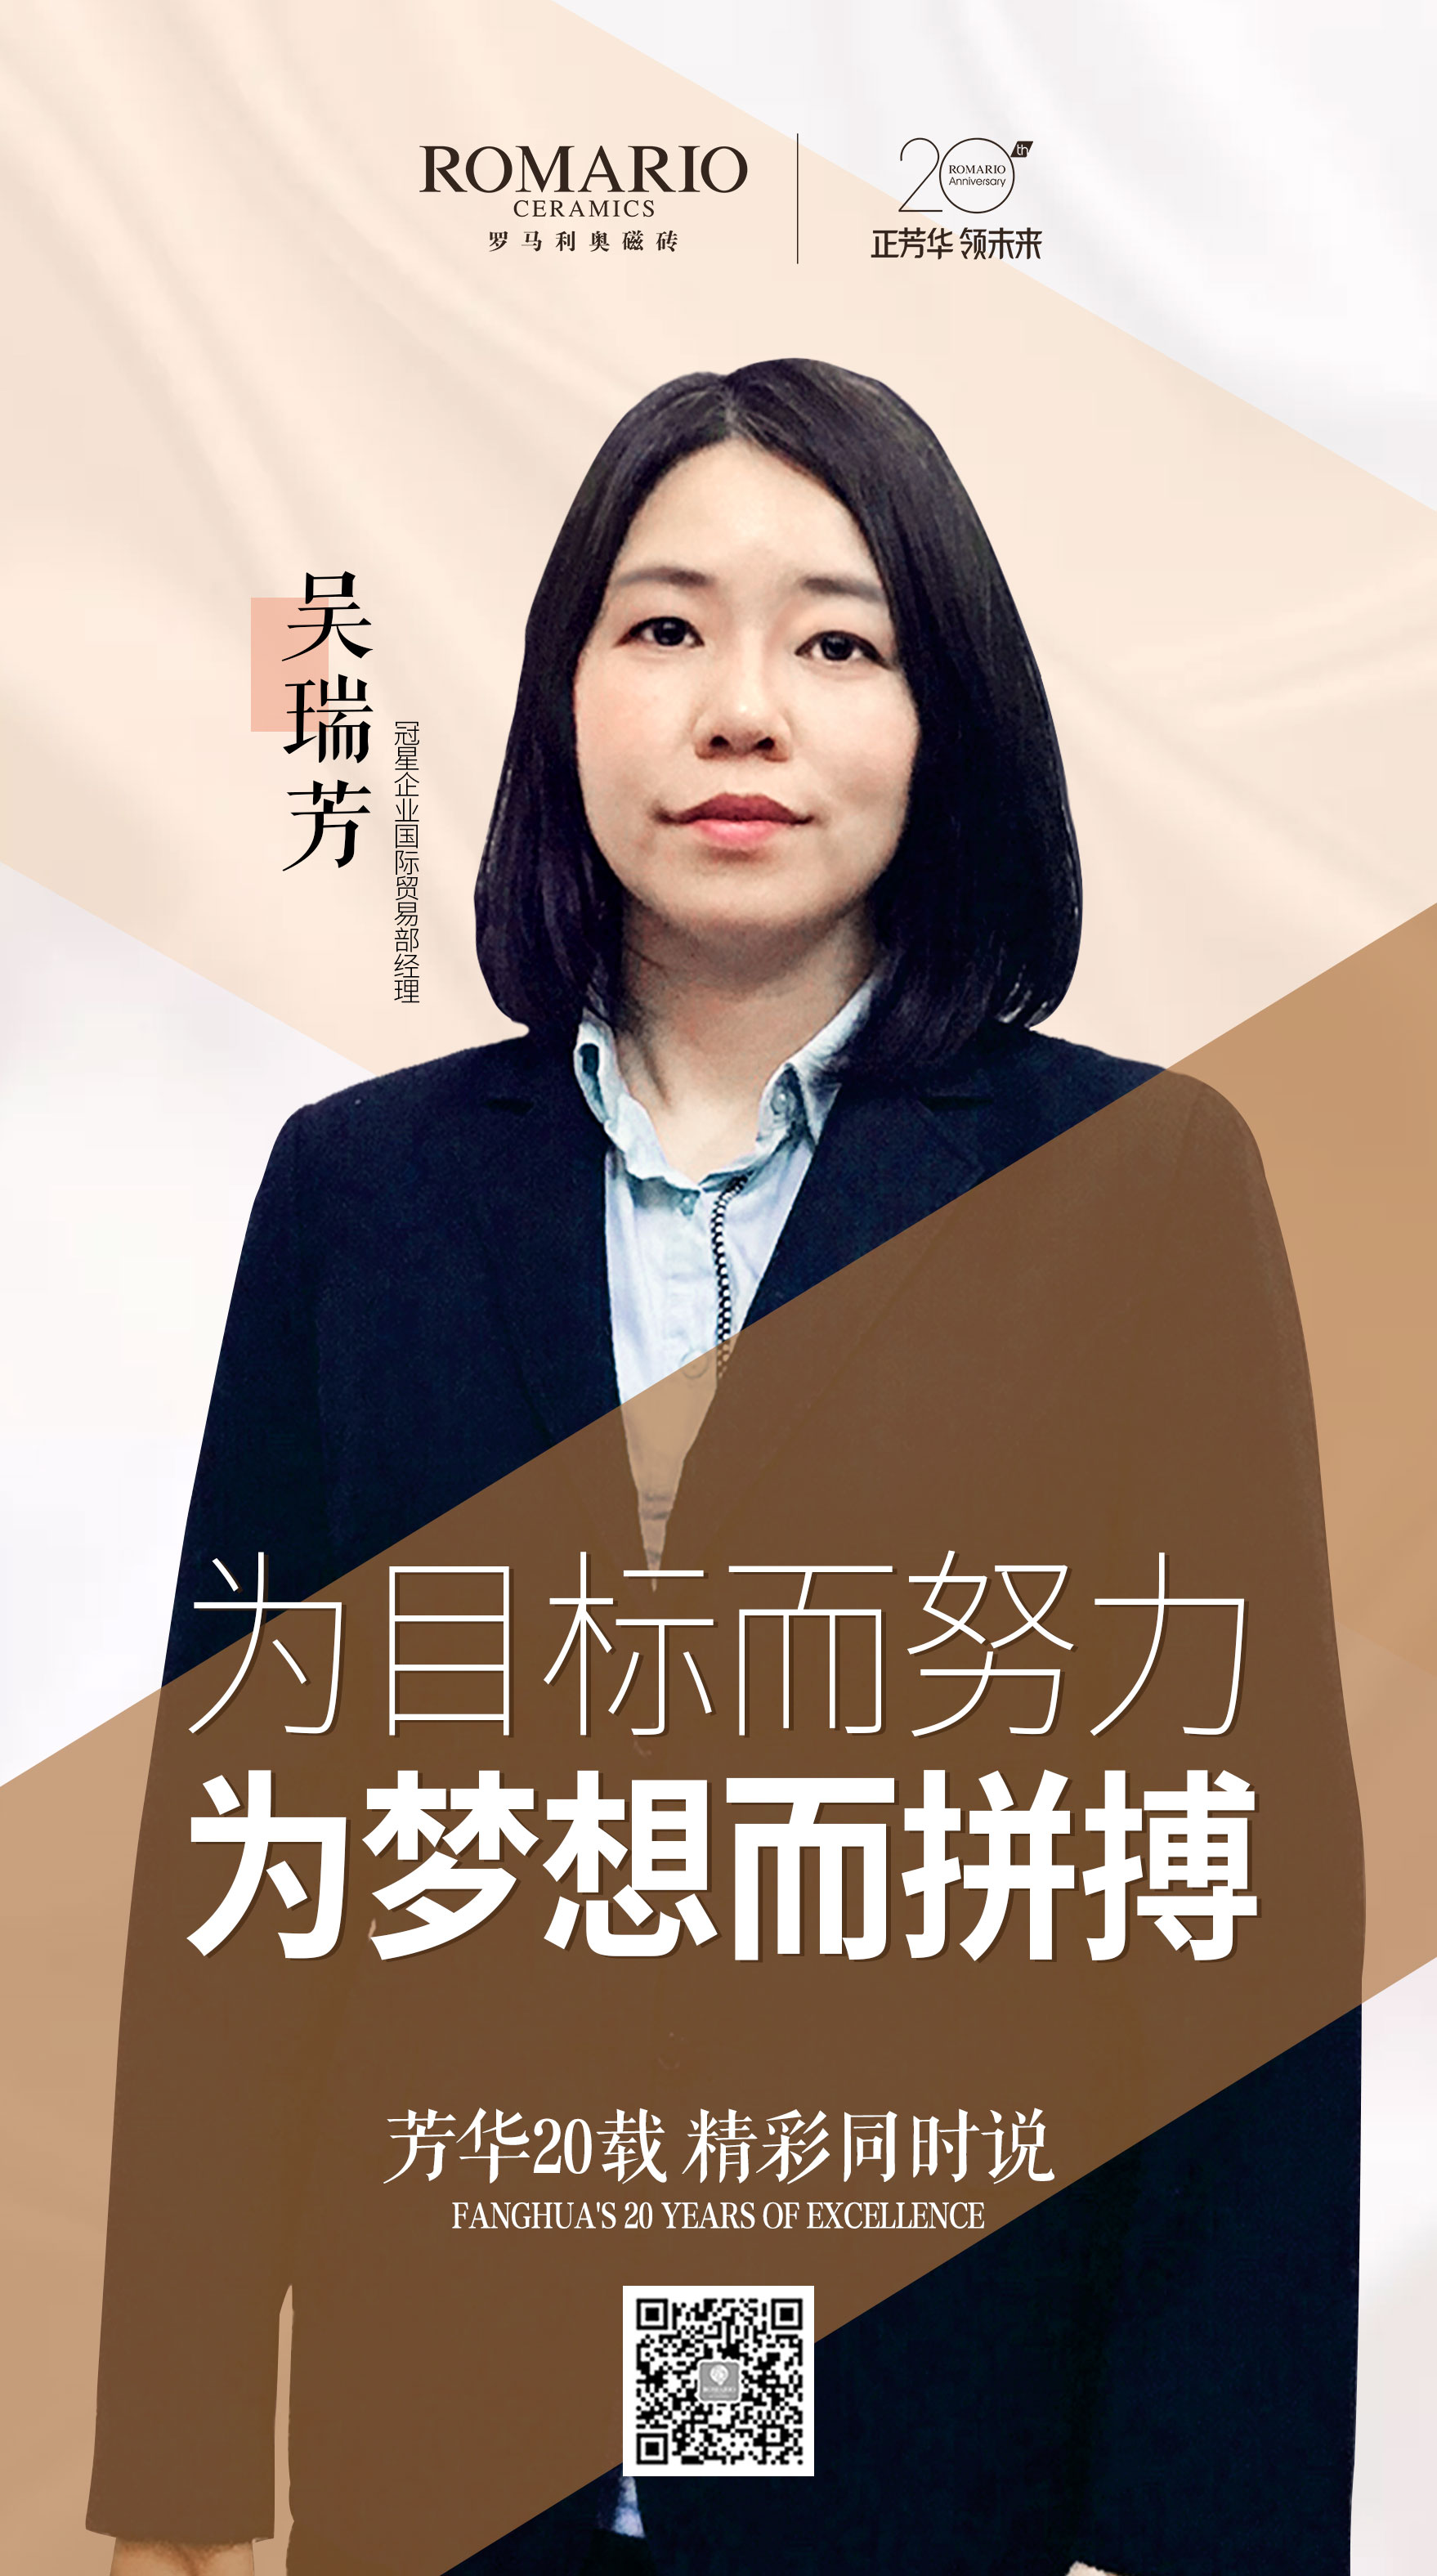 10-国际贸易部经理吴瑞芳吴瑞芳